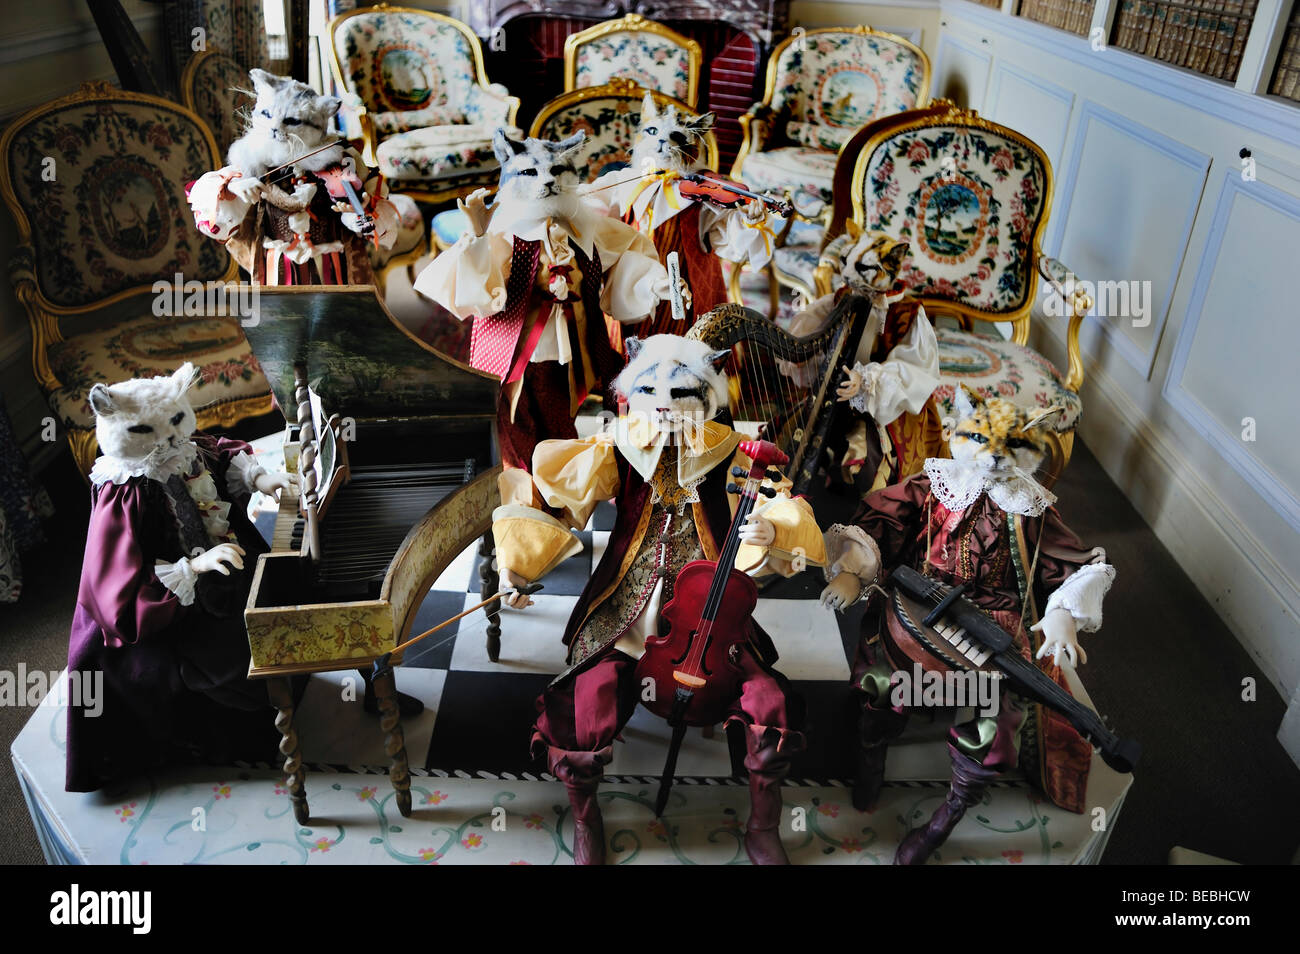 Paris, France - Antique doll collection sur l'affichage en salle de musique en français, Monument Château de Breteuil", "le concert des Cats' Banque D'Images